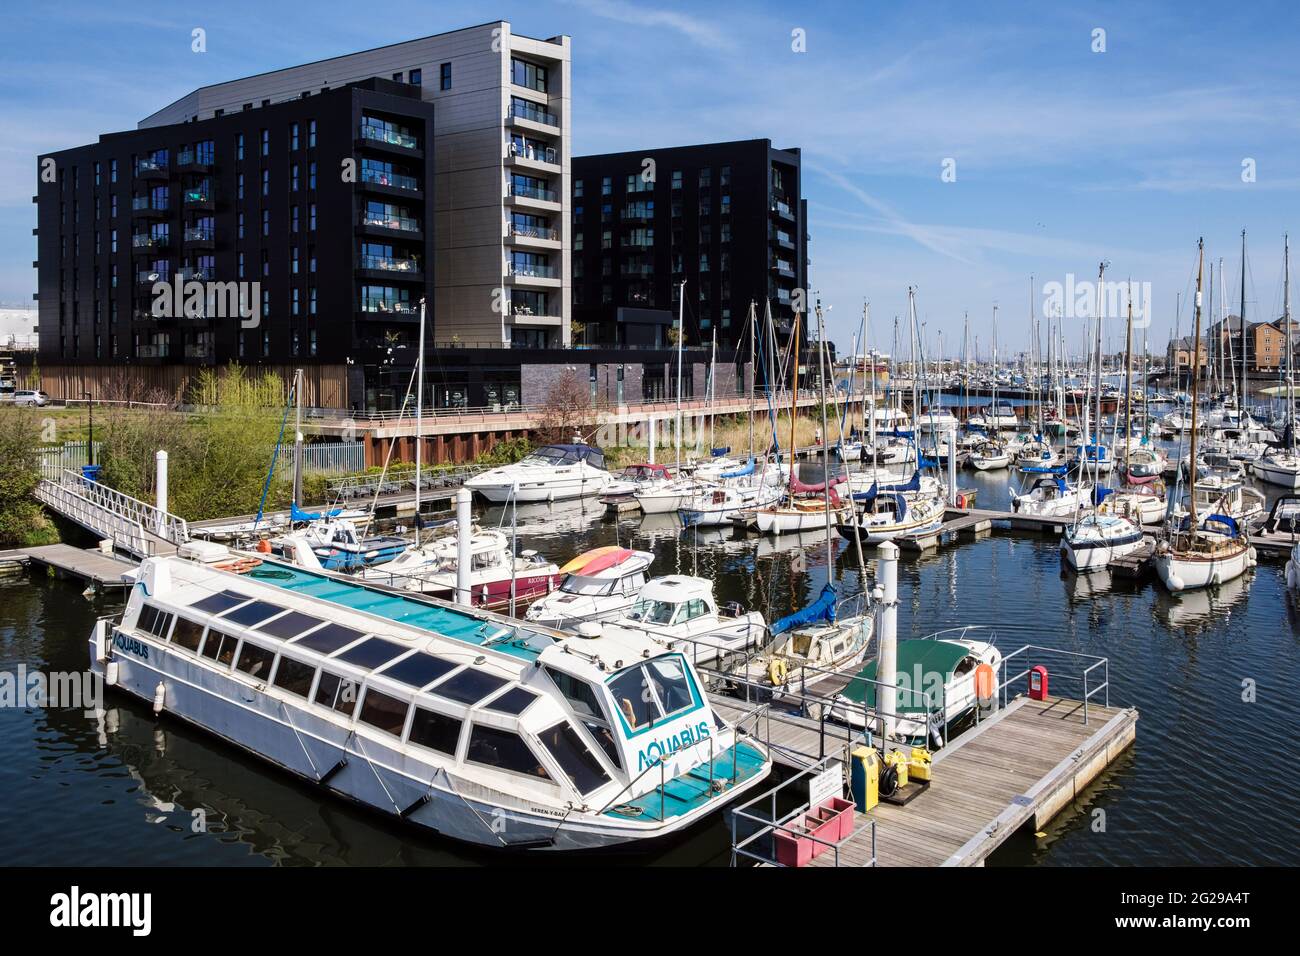 Aquabus et bateaux amarrés par des jetées sur la marina de la rivière Ely. Penarth, Cardiff, (Caerdydd), Vale de Glamourgan, pays de Galles du Sud, Royaume-Uni, Grande-Bretagne Banque D'Images